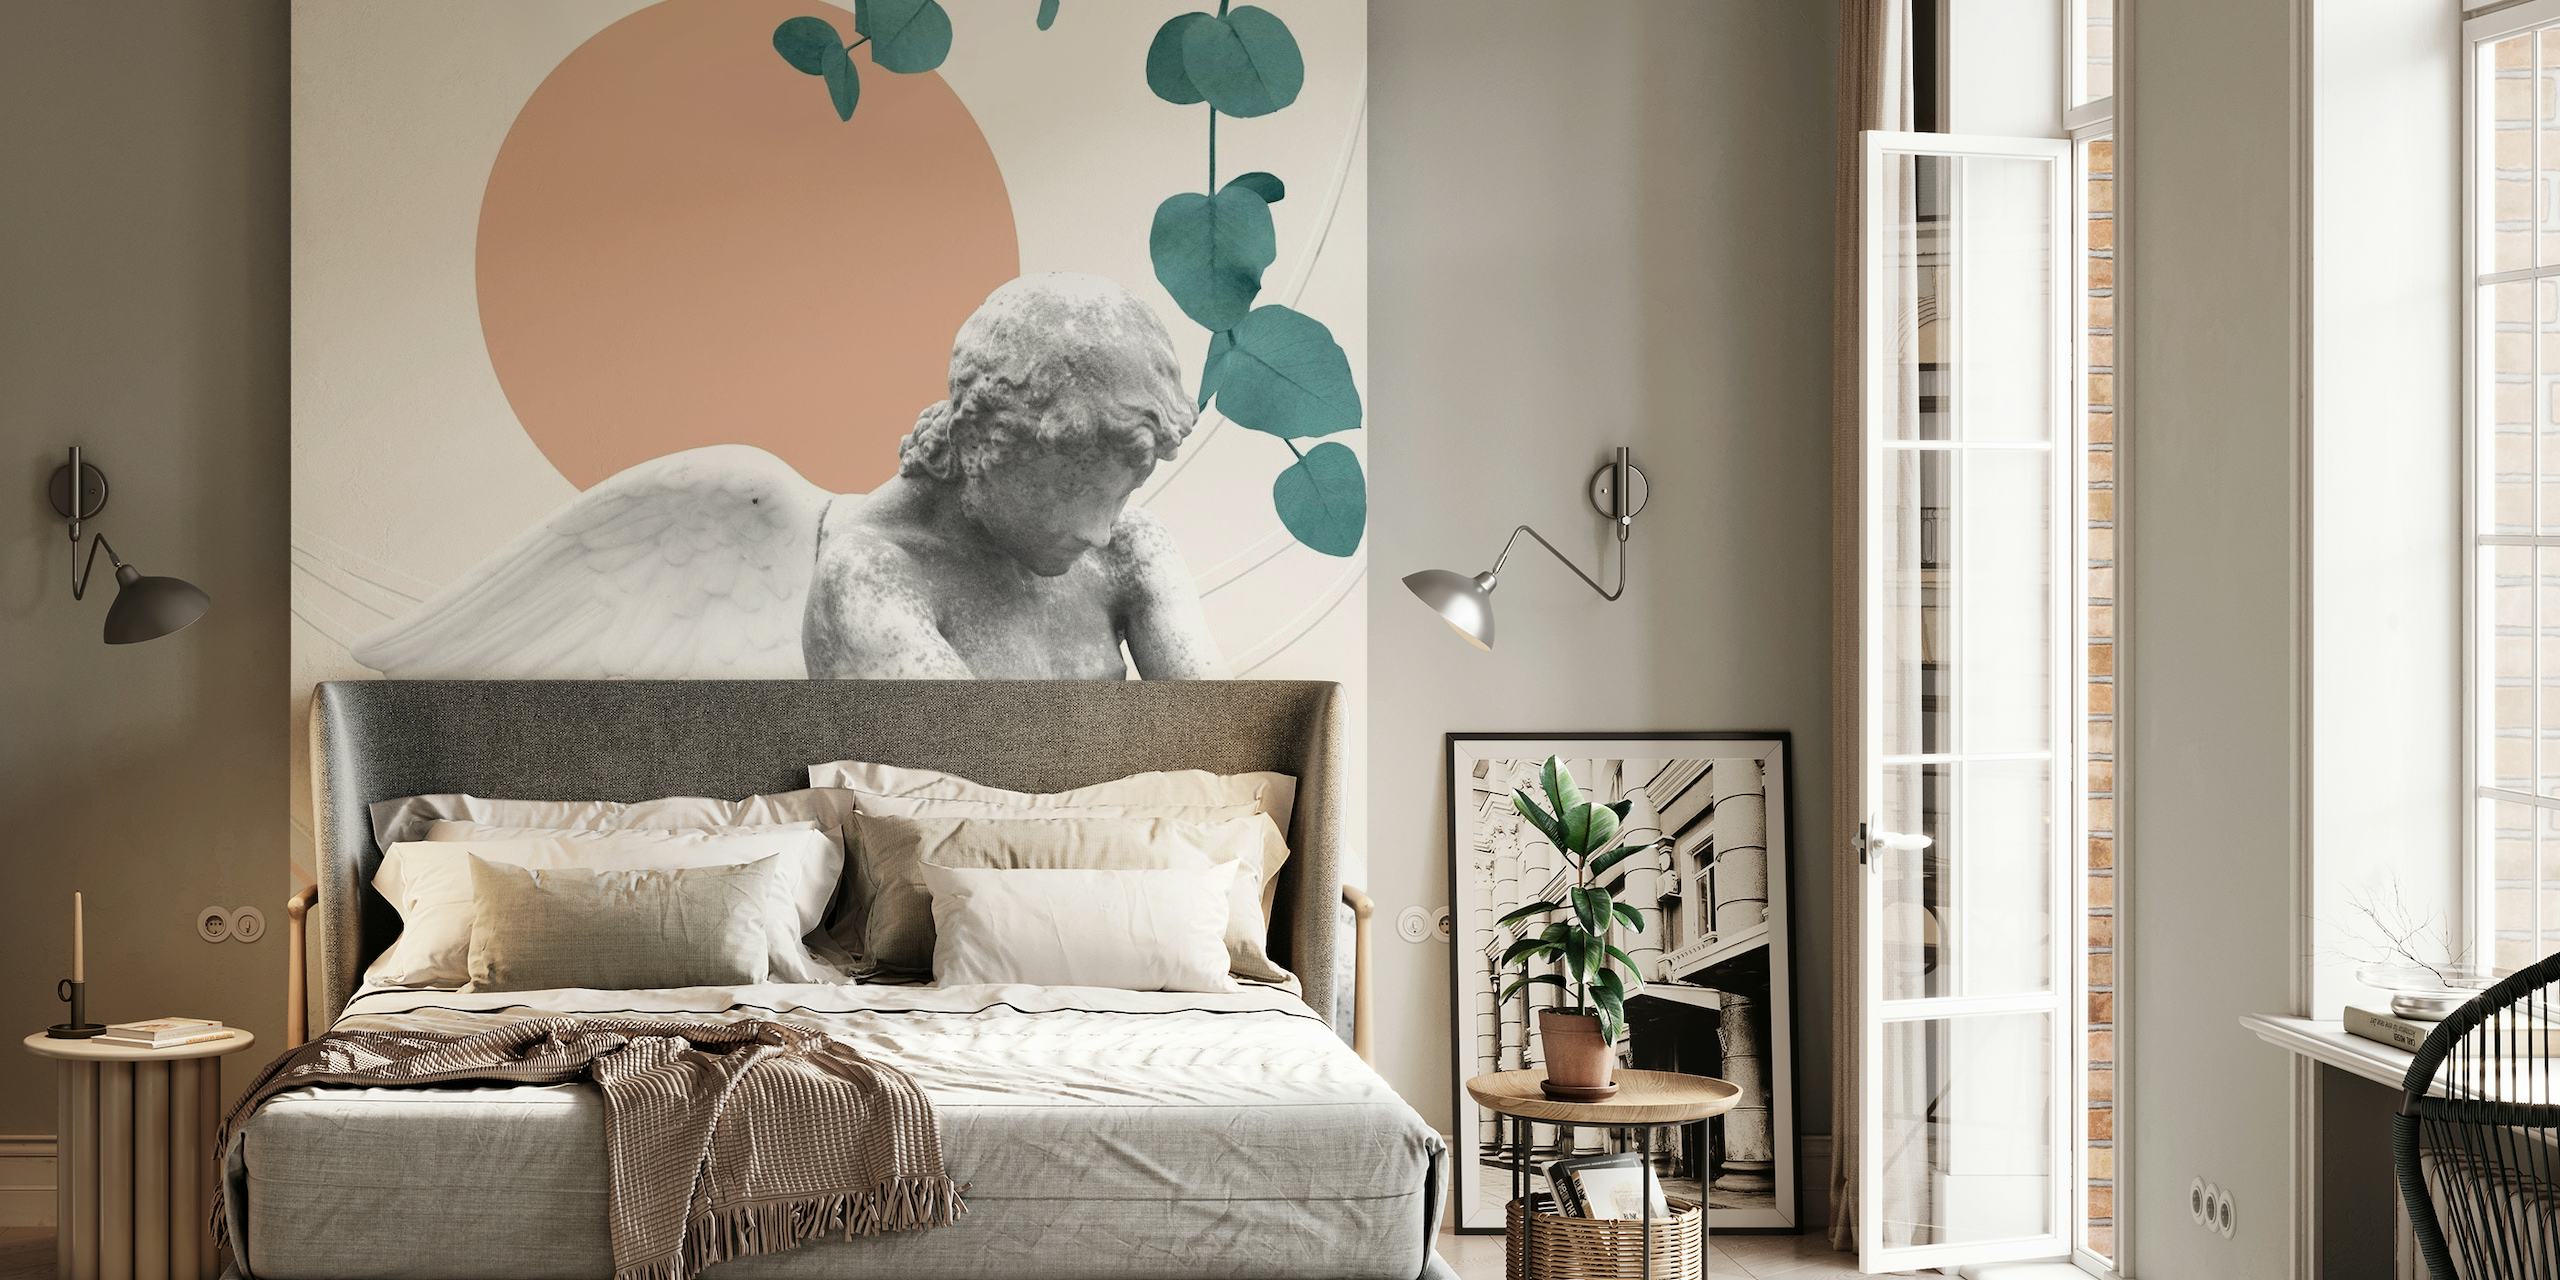 Eros Abstract Finesse zidna slika s kerubinima, mramornim teksturama, geometrijskim oblicima i botaničkim elementima.